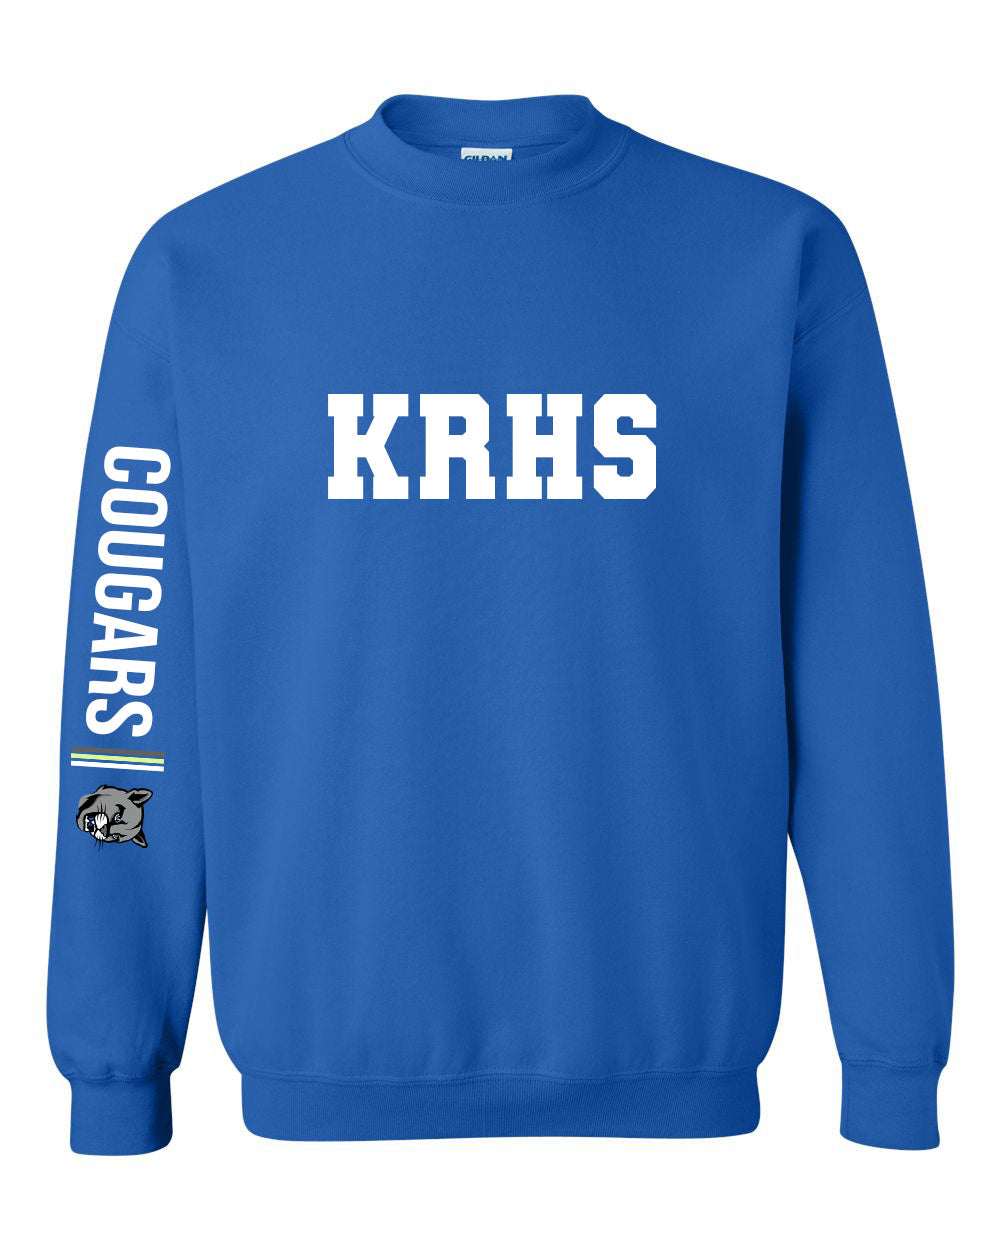 KRHS Design 5 non hooded sweatshirt